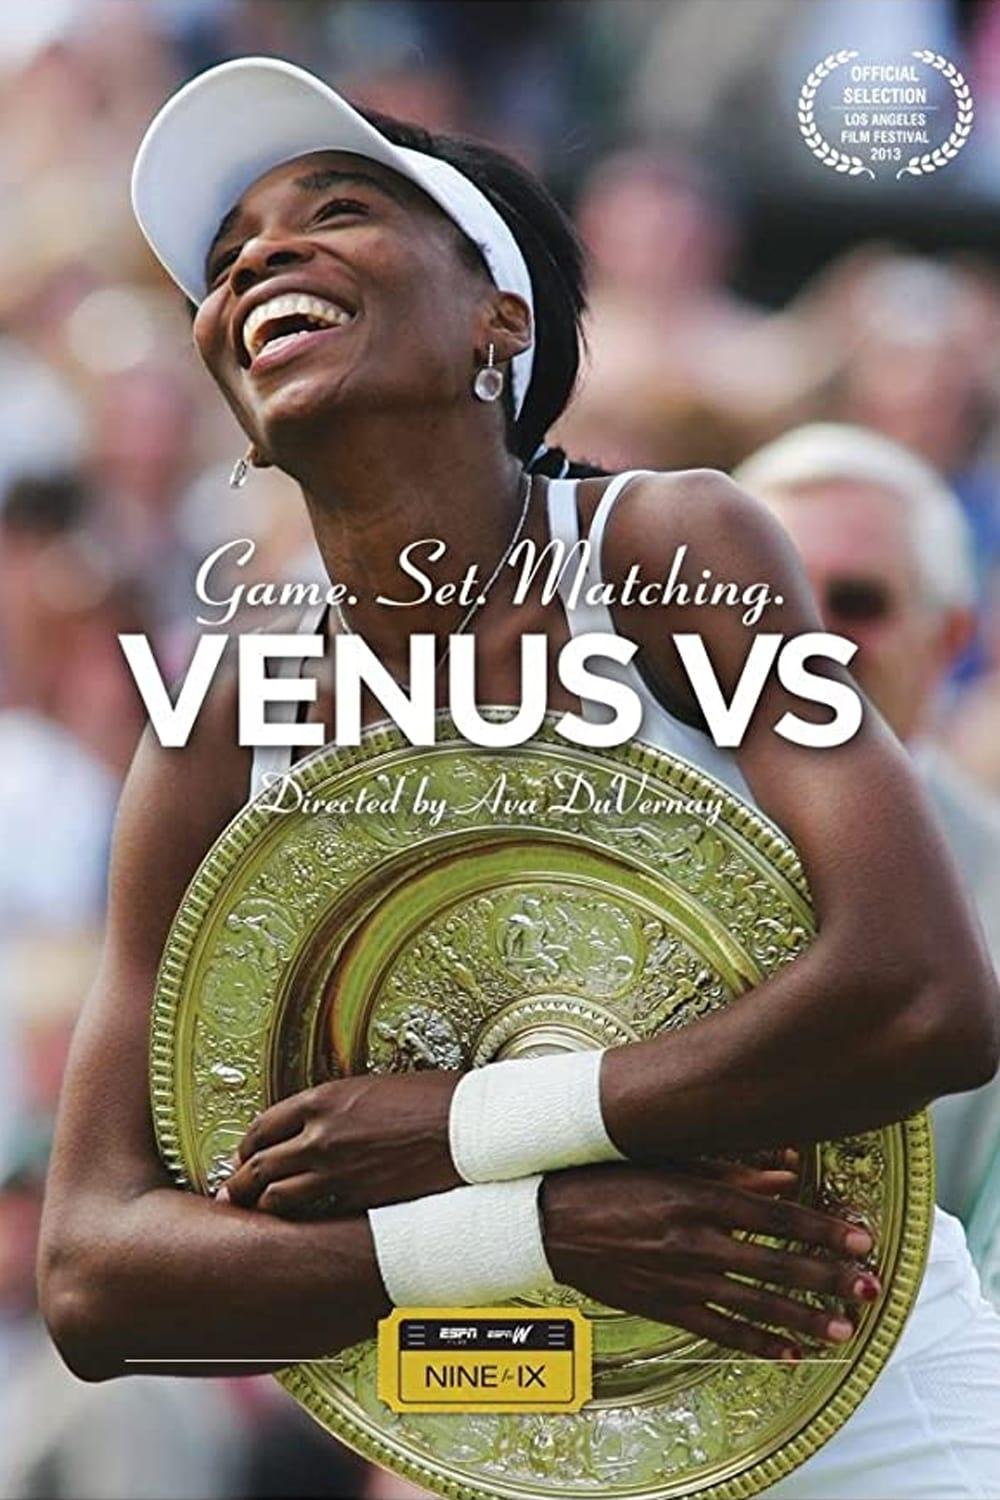 Venus VS. poster